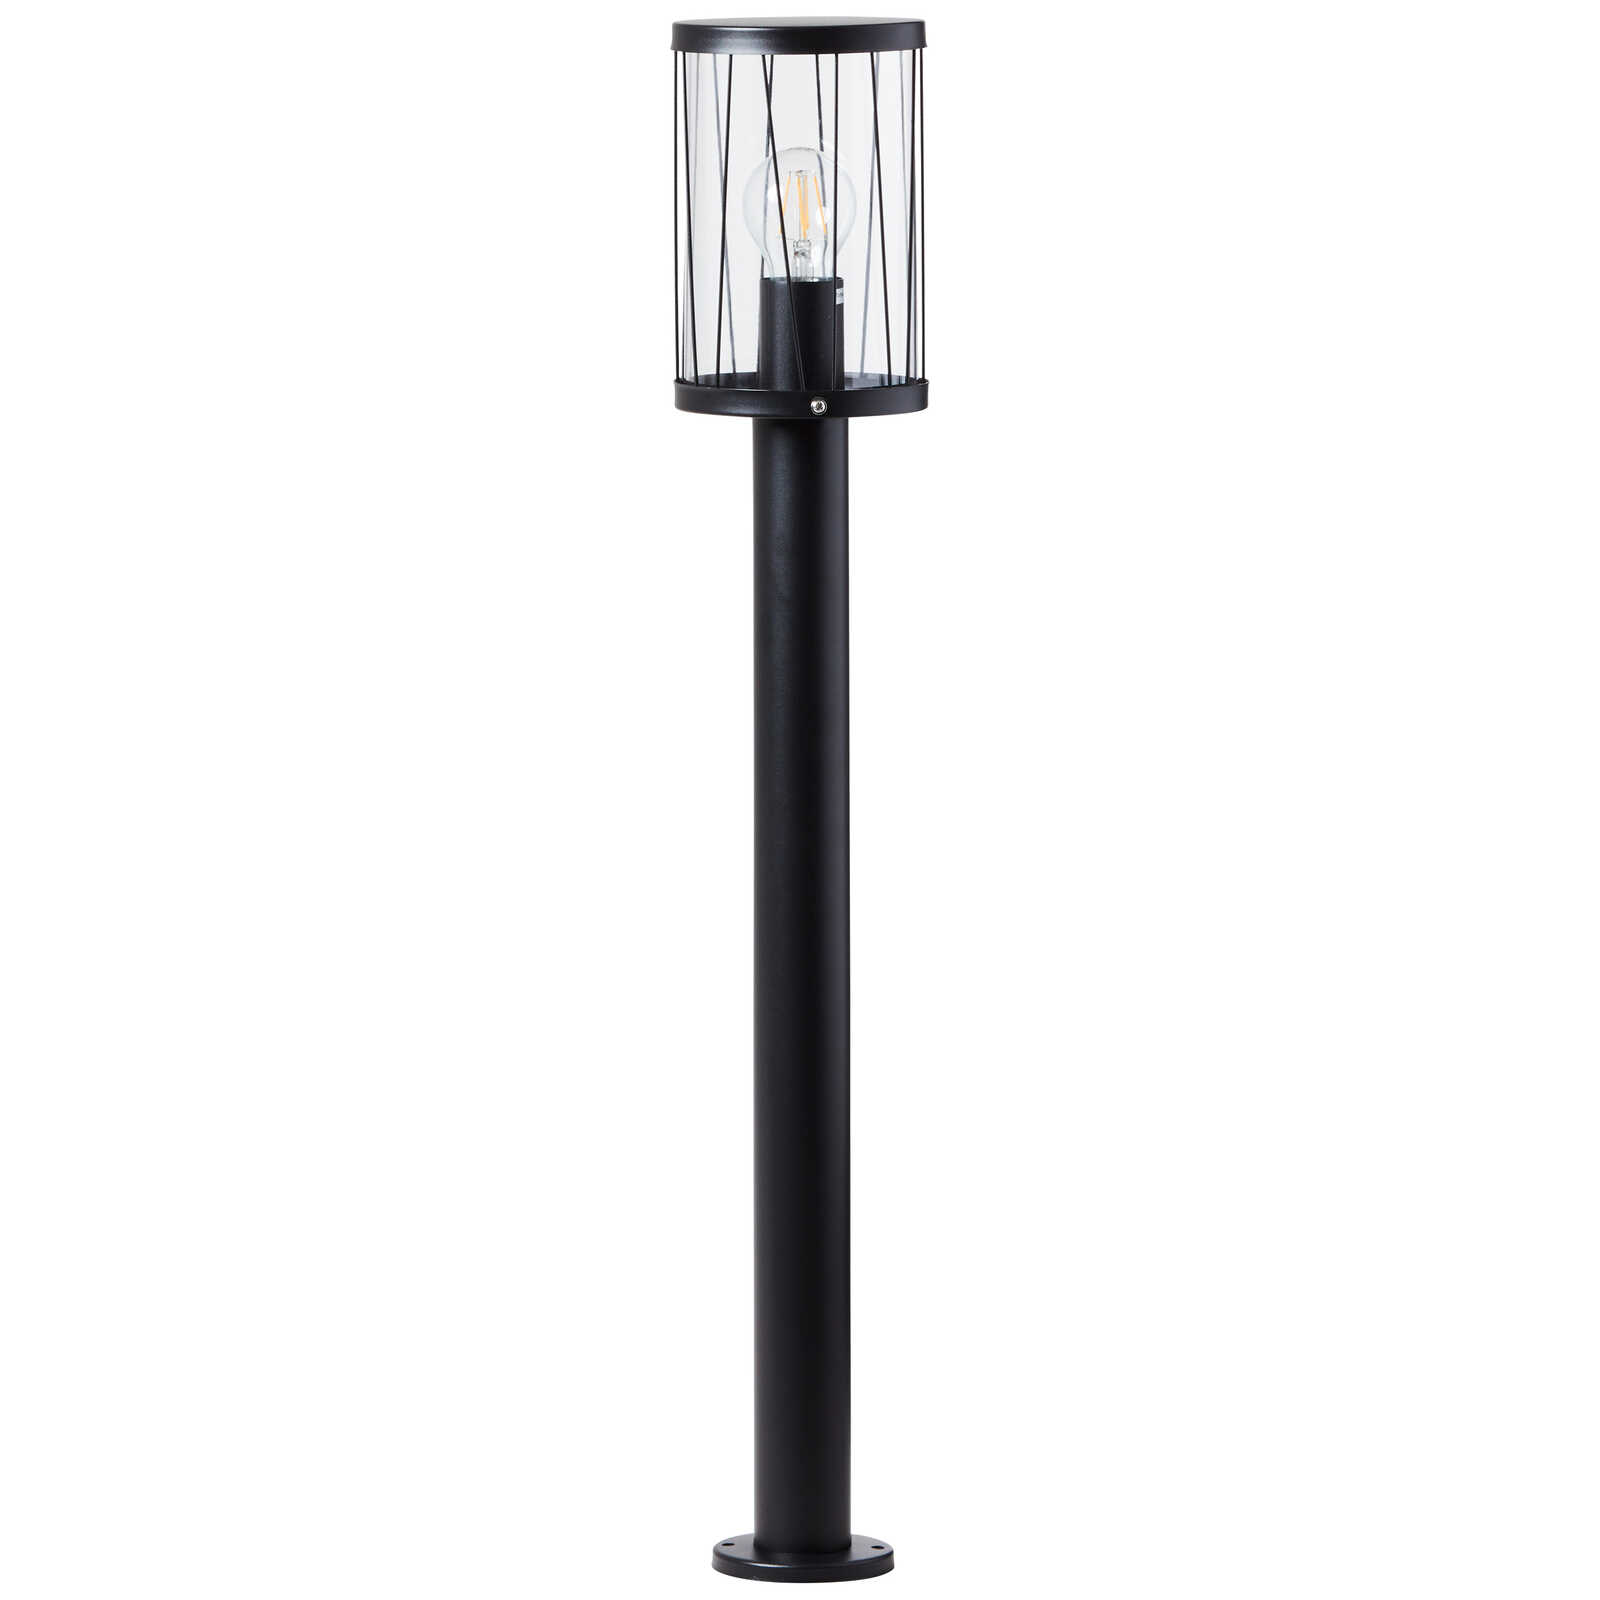             Plastic outdoor floor lamp - Matti 1 - Black
        